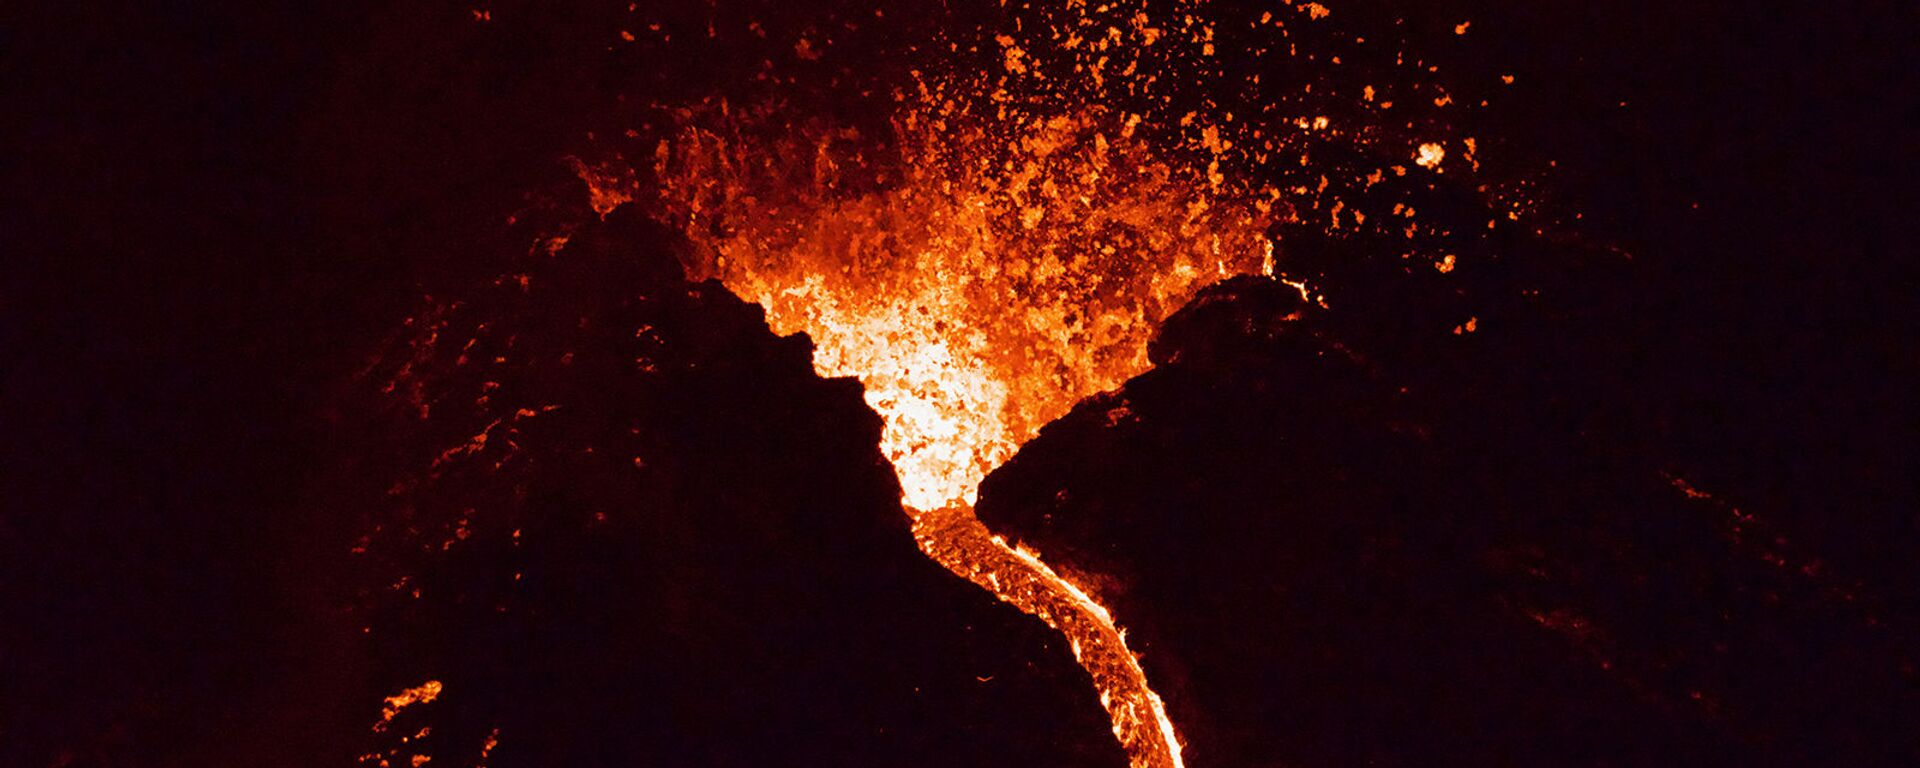 Лава течет из извергающегося вулкана Фаградалсфьяль примерно в 40 км к западу от Рейкьявика )26 марта 2021). Исландия - Sputnik Армения, 1920, 22.05.2021